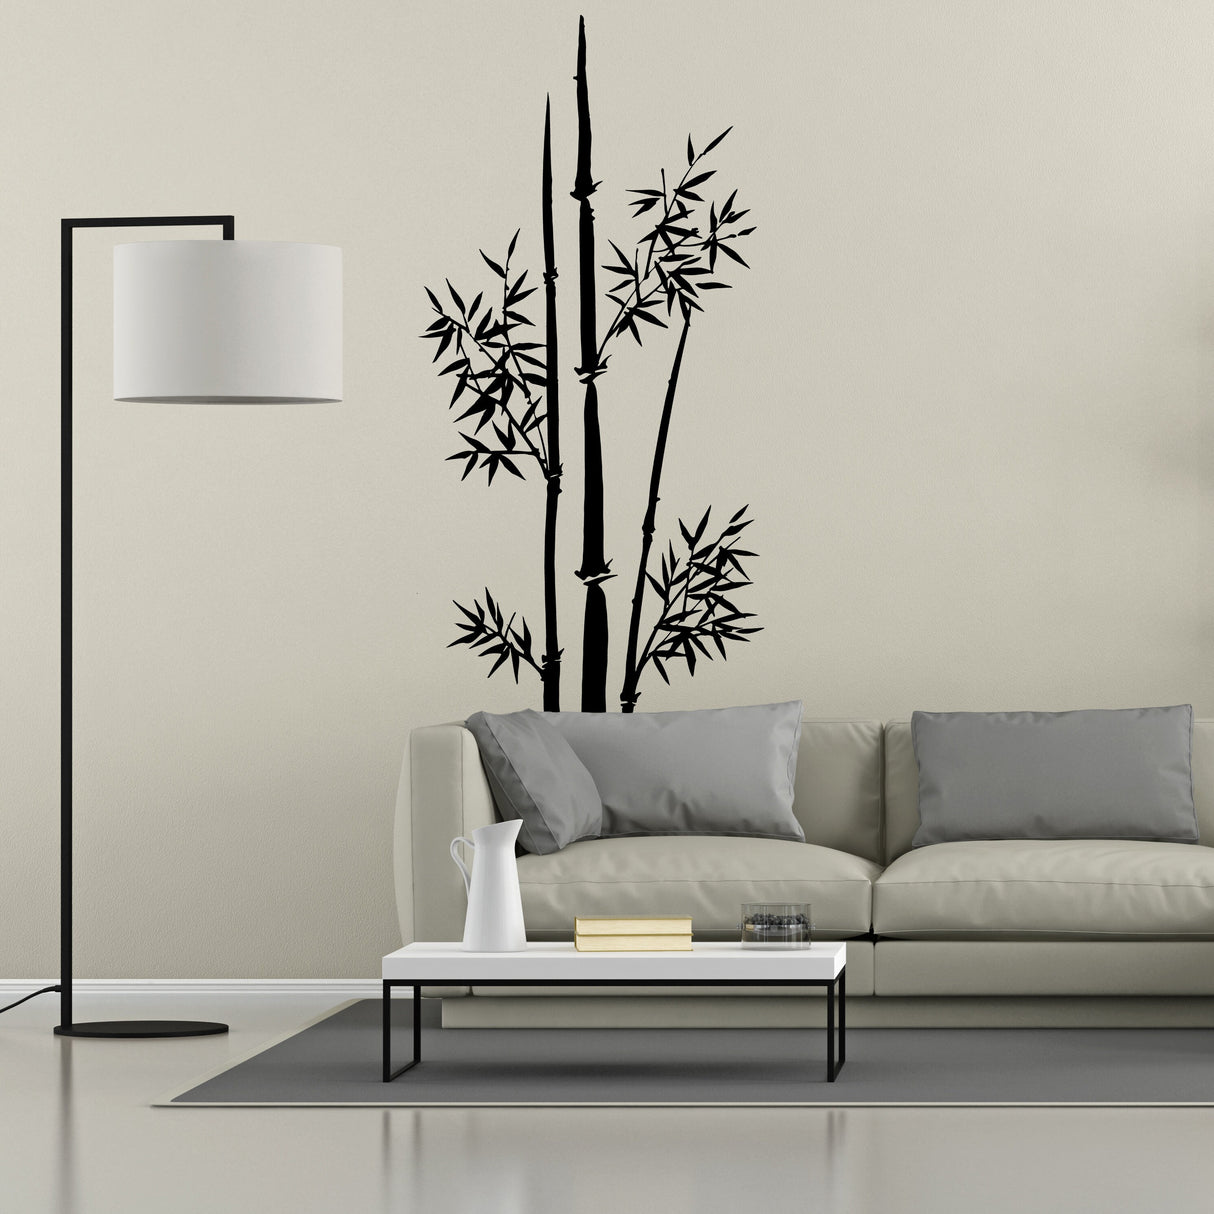 Bamboo Wall Vinyl Sticker - Large Art Decor Stalk Set Door Home Design Decal